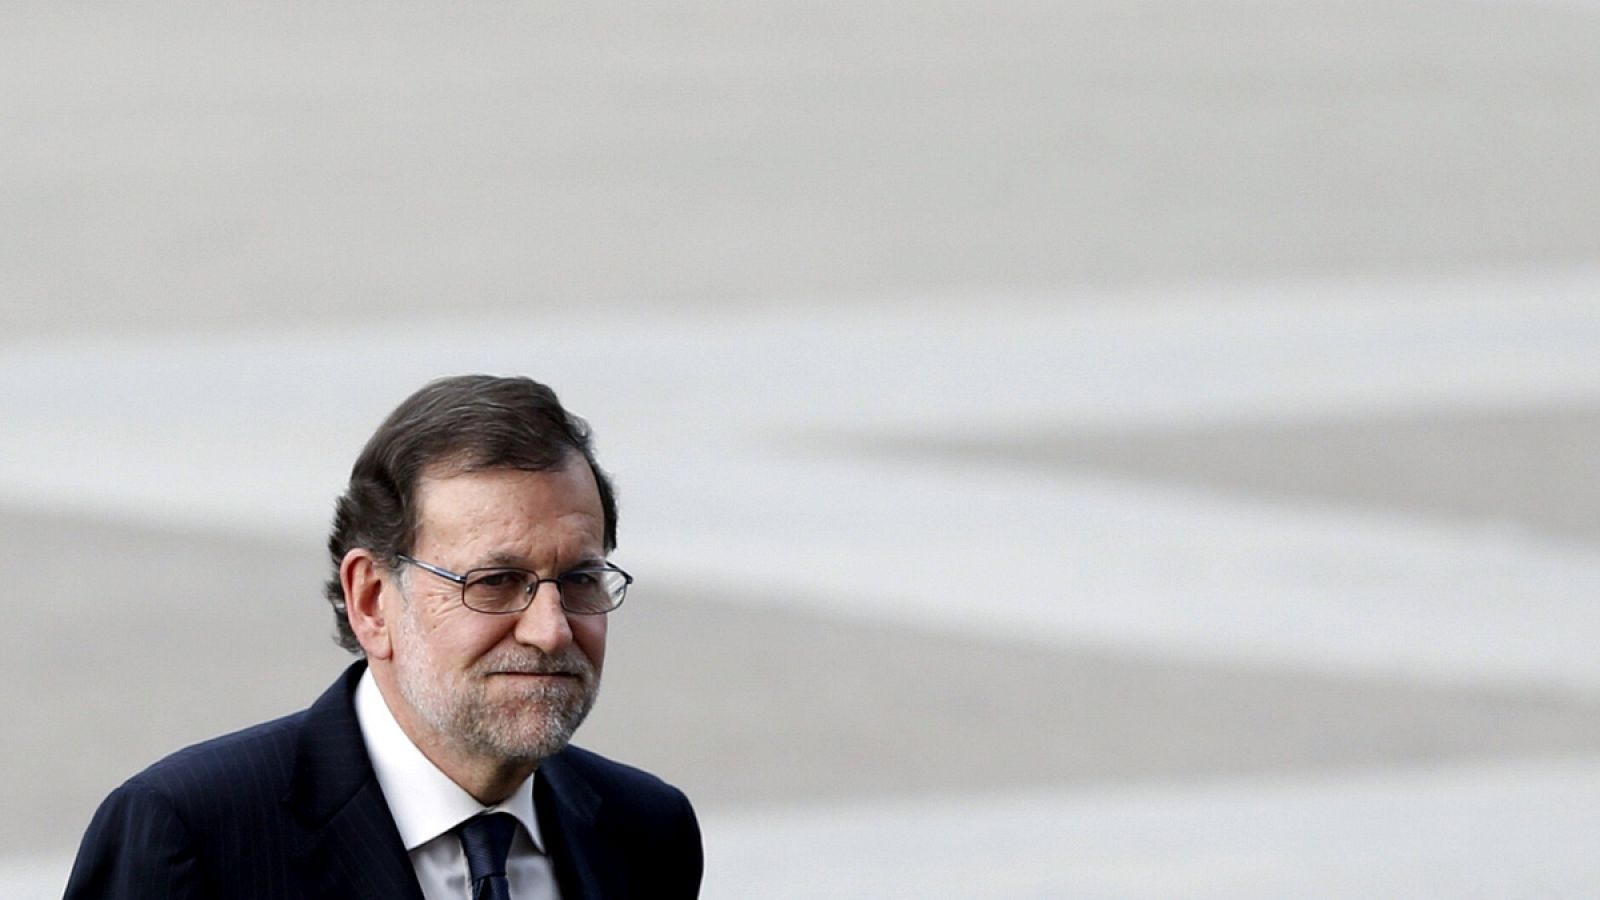 El presidente del Gobierno en funciones, Mariano Rajoy, a su llegada a la catedral de la Almudena, en Madrid, para asistir a la misa solemne en recuerdo a las víctimas del terremoto de Ecuador